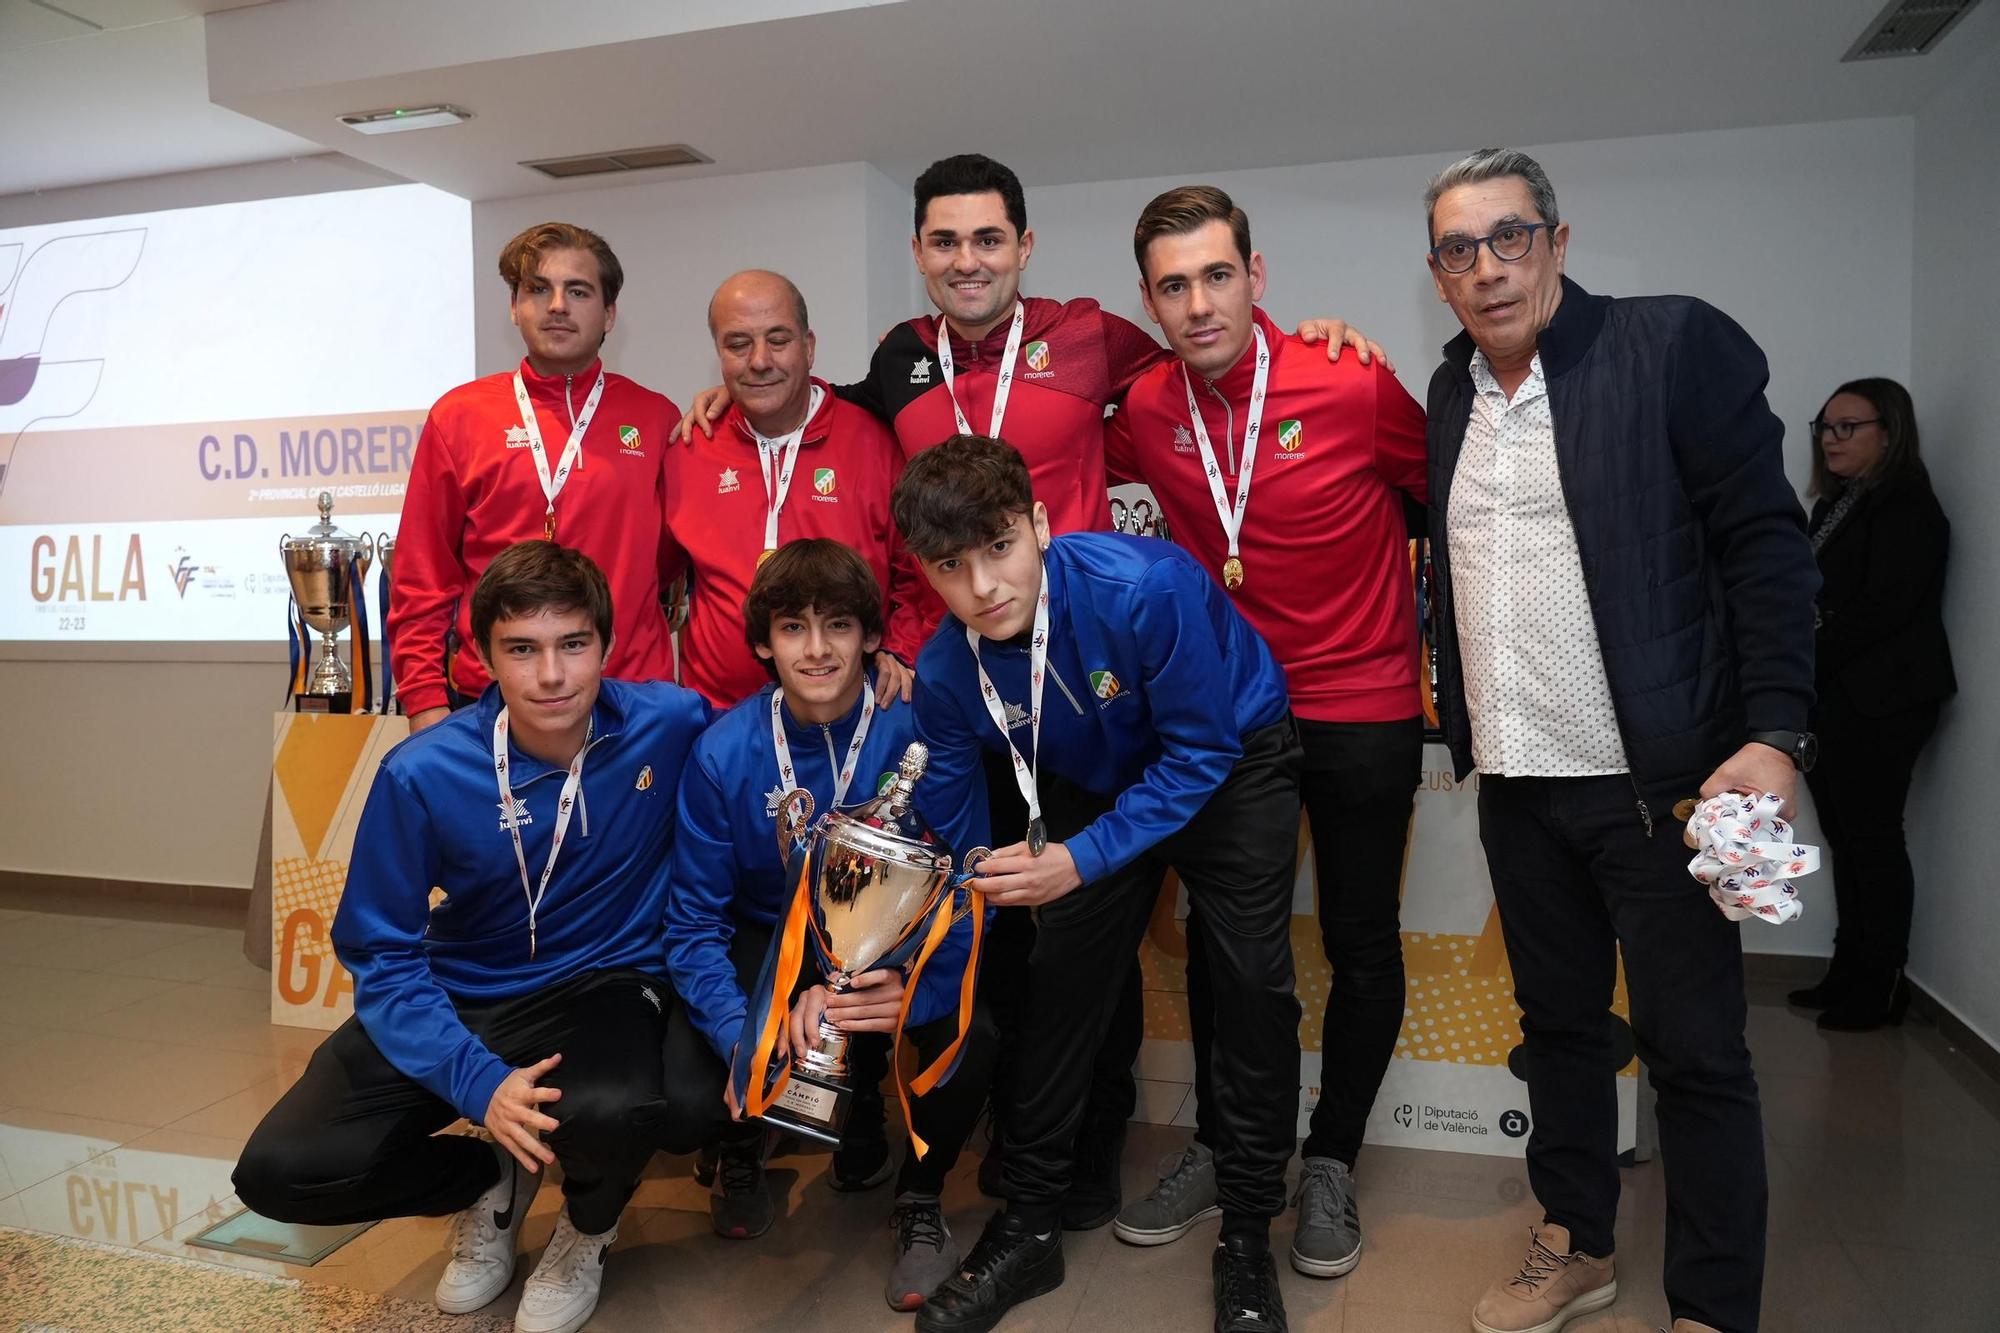 Galería | Los campeones de fútbol y fútbol sala de Castellón en 2023, aquí